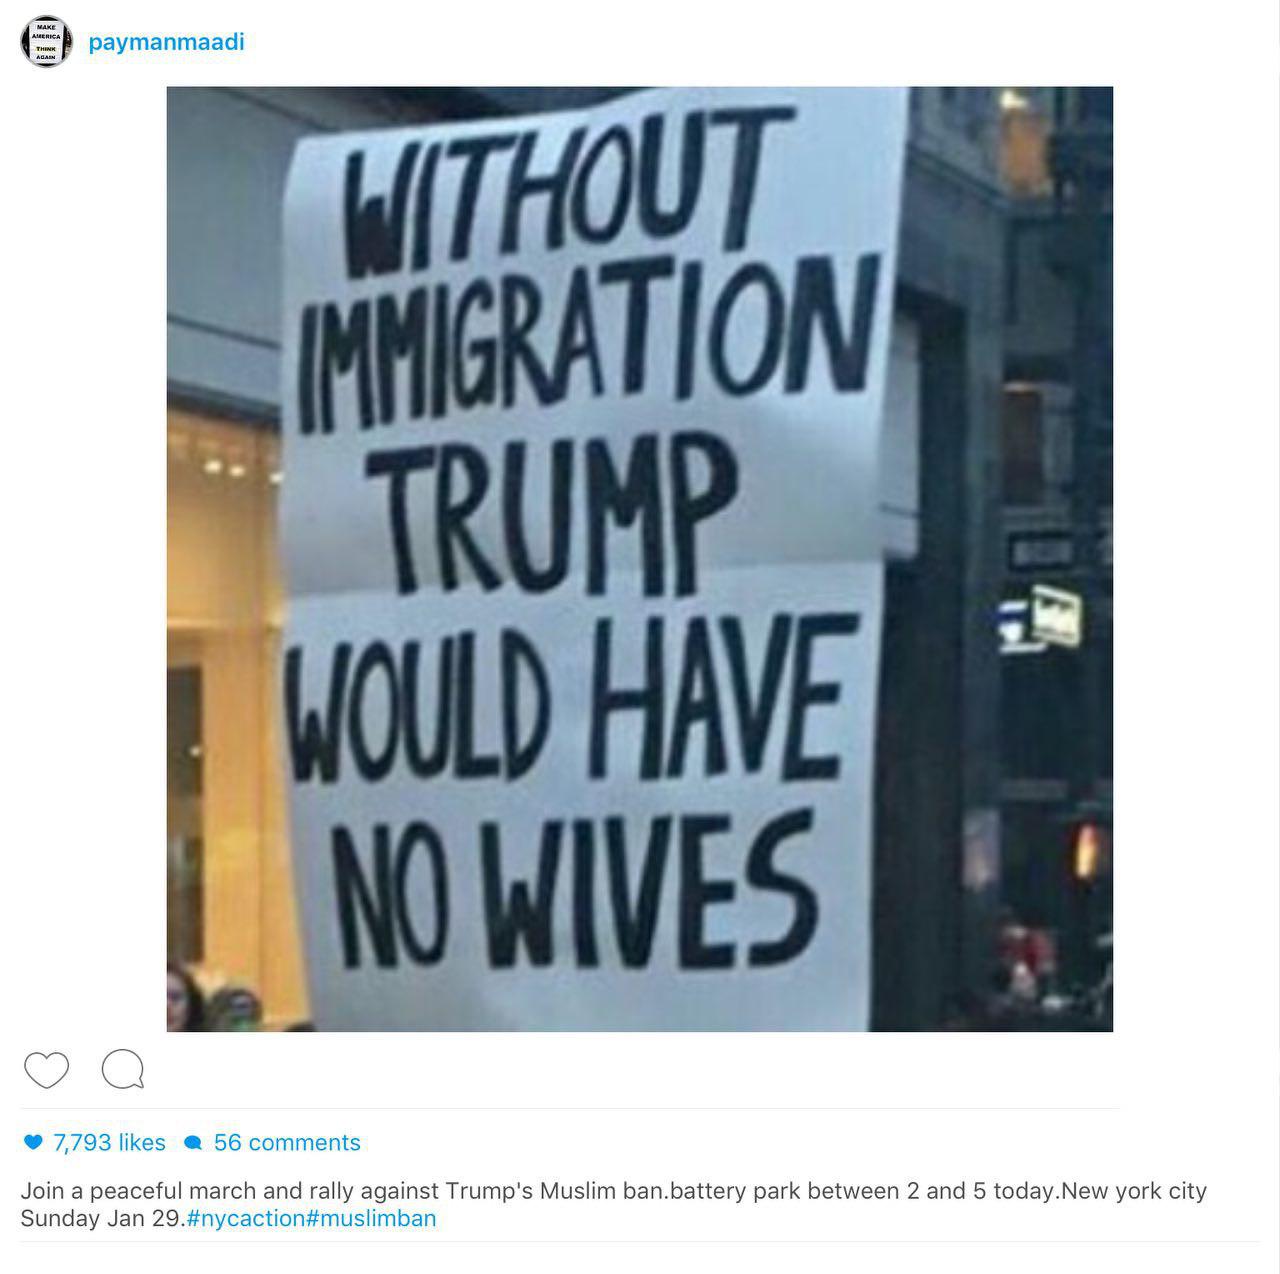 پیمان معادى: بدون مهاجرت، ترامپ زن نداشت! +عکس